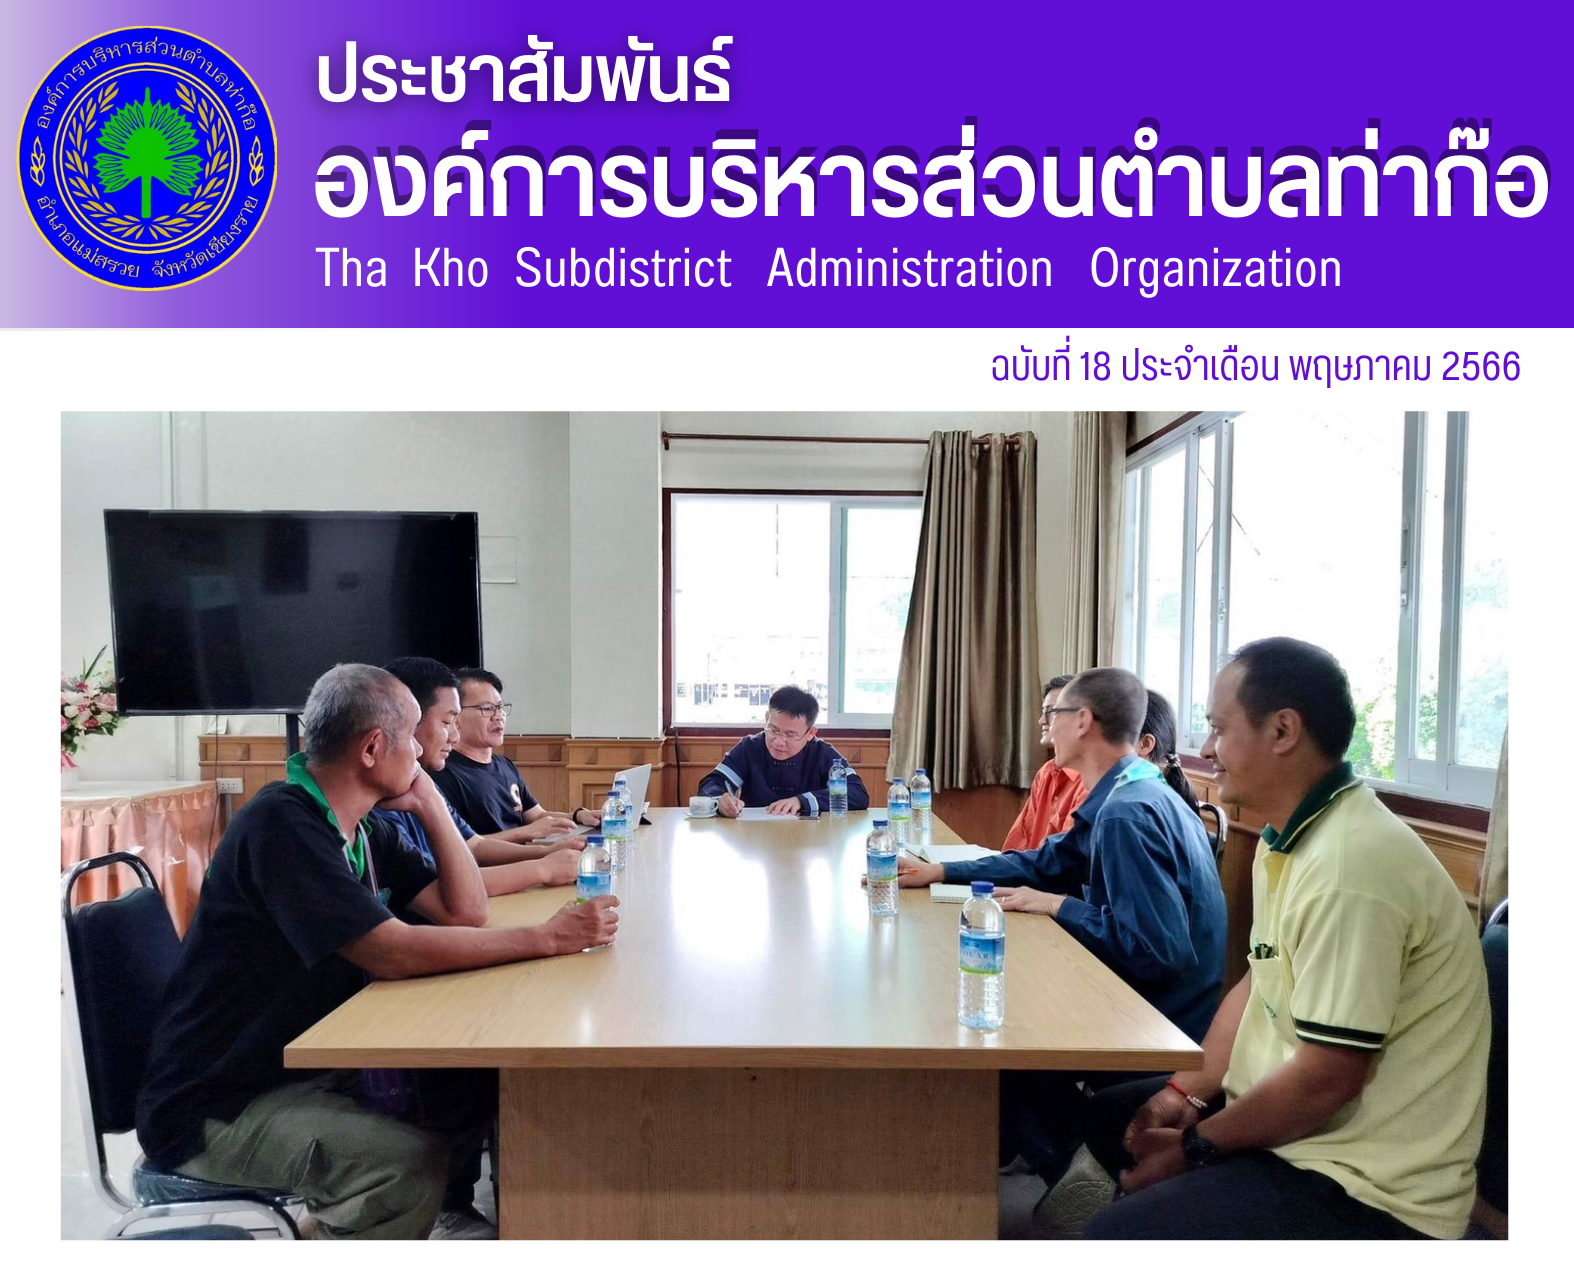 องค์การบริหารส่วนตำบลท่าก๊อ นำโดย นายสันติกุล จือปา รองนายกฯ เข้าร่วมประชุมหารือ ร่วมกับนายอุดม ปกป้องบวรกุล นายอำเภอแม่สรวย มูลนิธิรักษ์ไทย และสมาคมอิมเปค